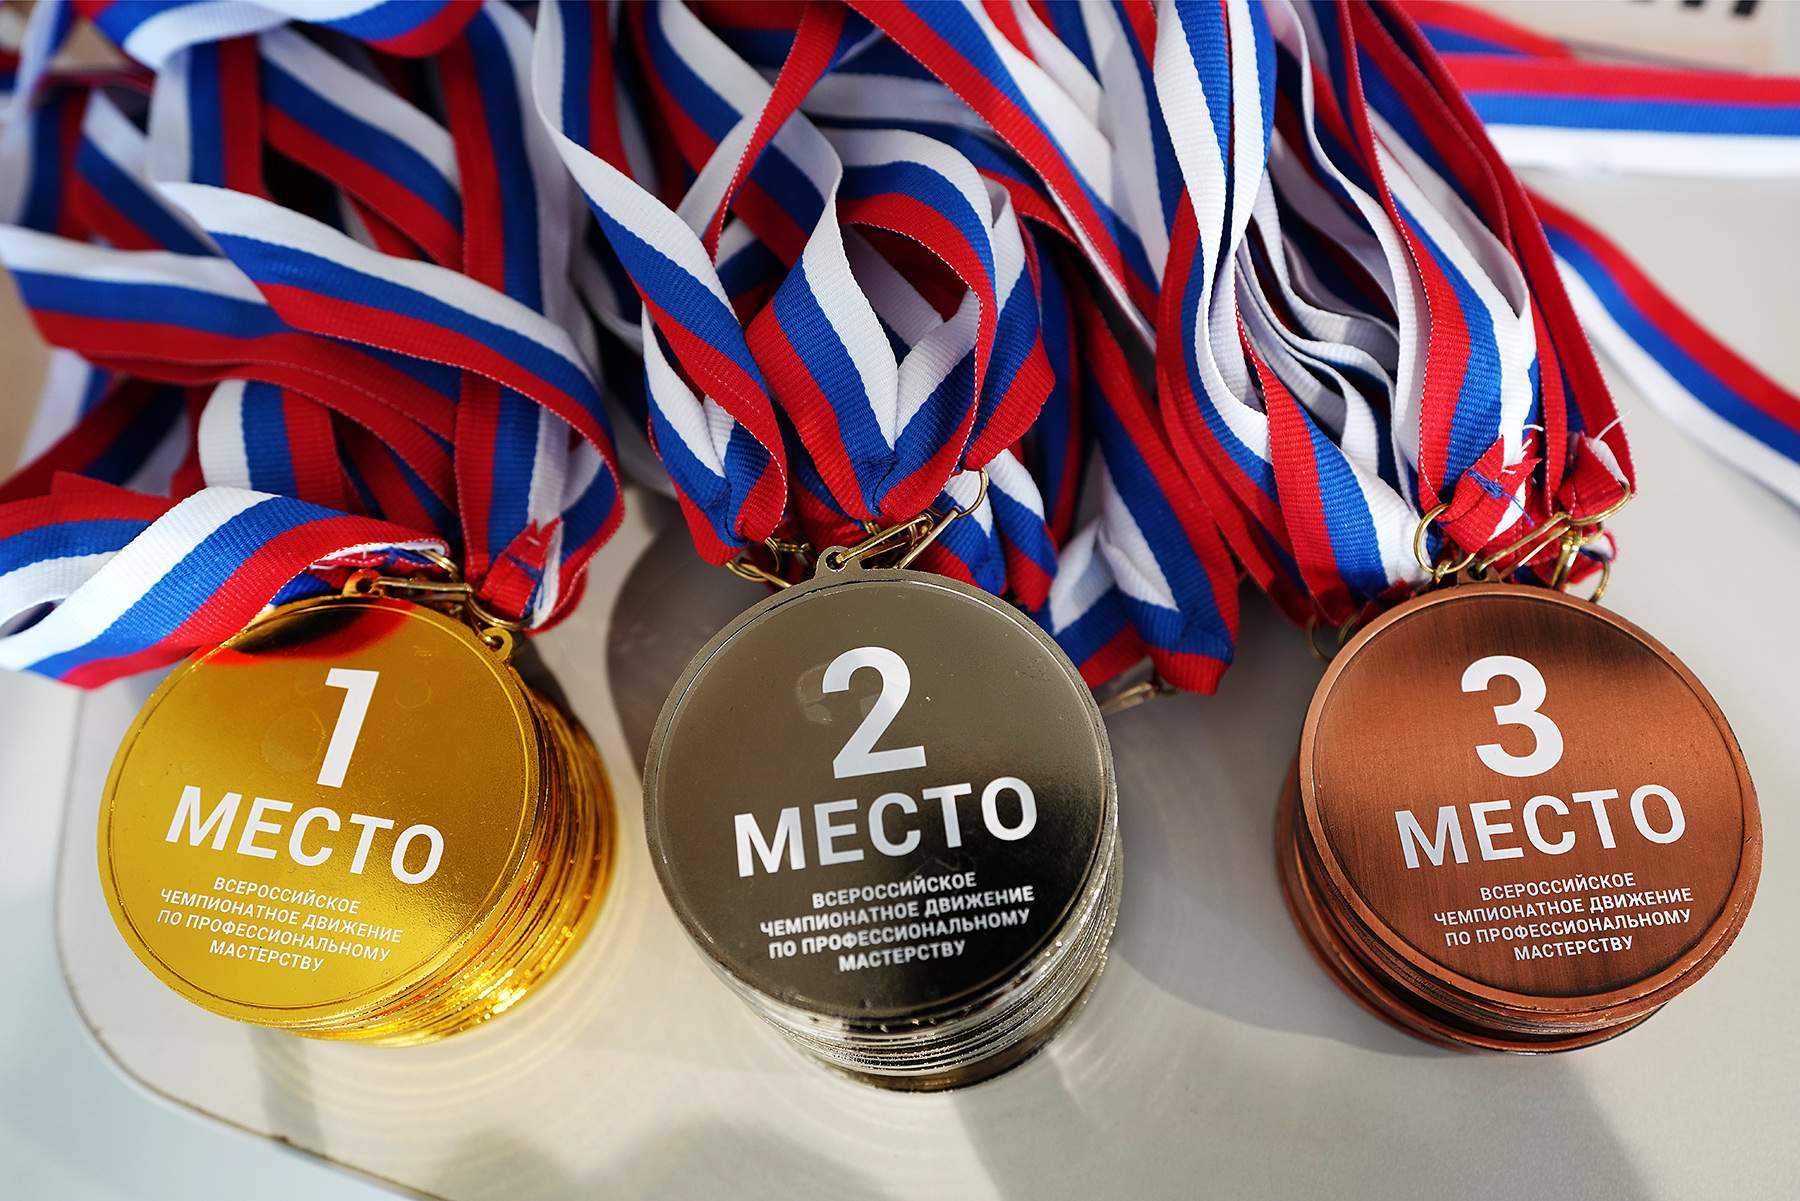 Медали регионального этапа чемпионата России по проф. мастерству получили профессионалы Академического колледжа ВВГУ